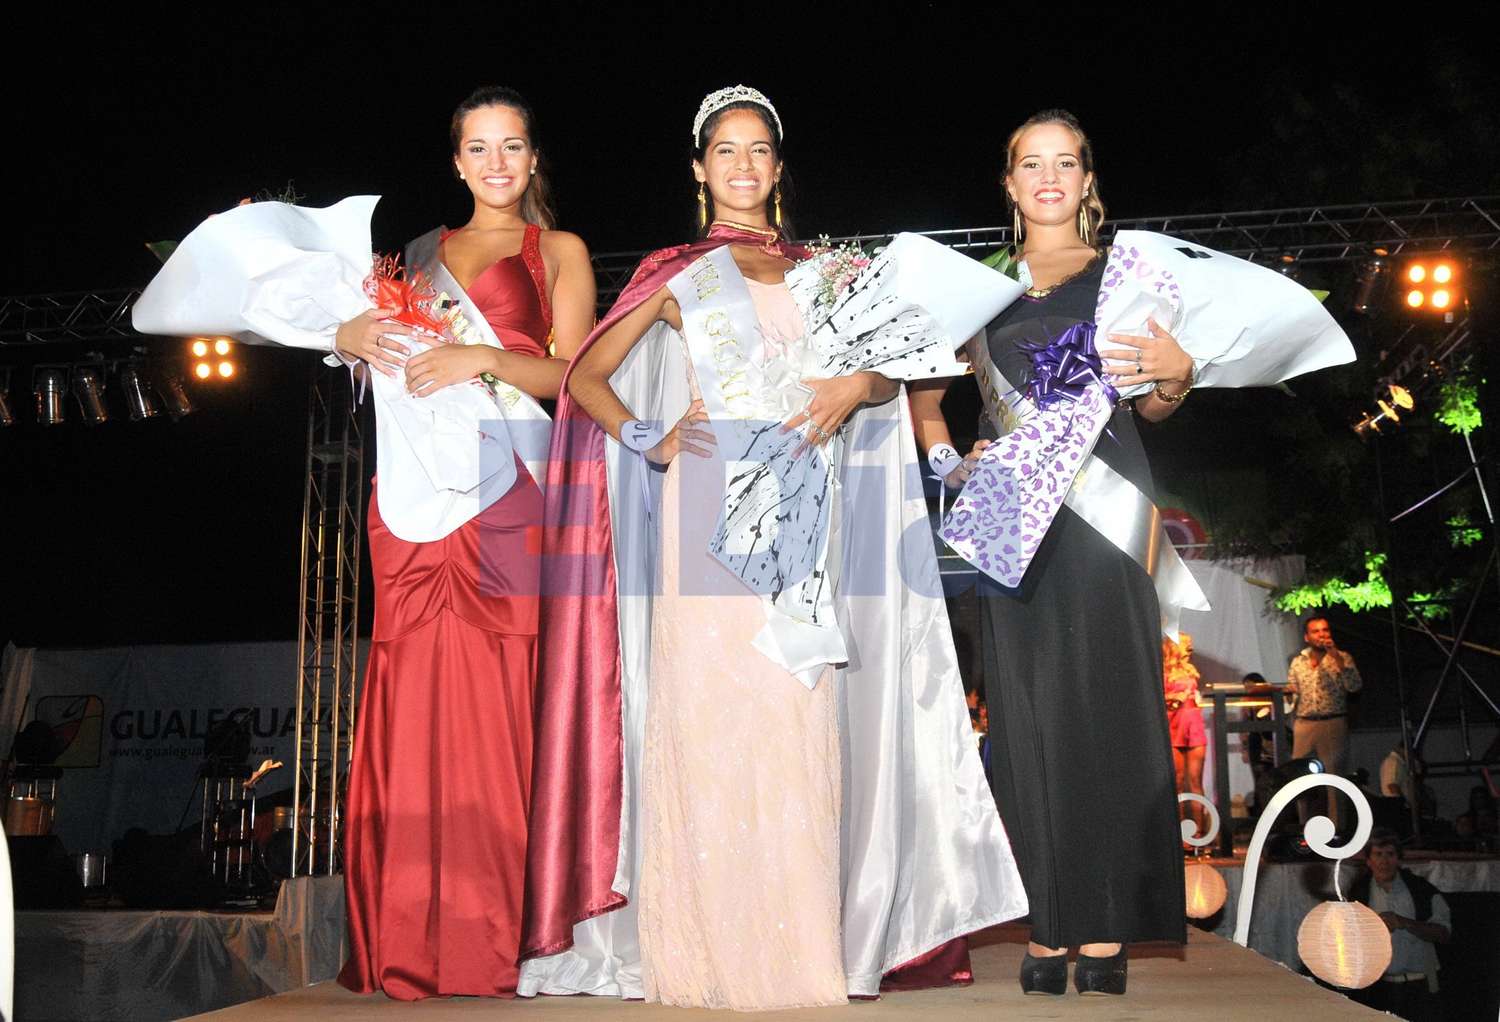 Reinas en Gualeguaychú: "La tradición", el patriarcado y las vetustas estructuras